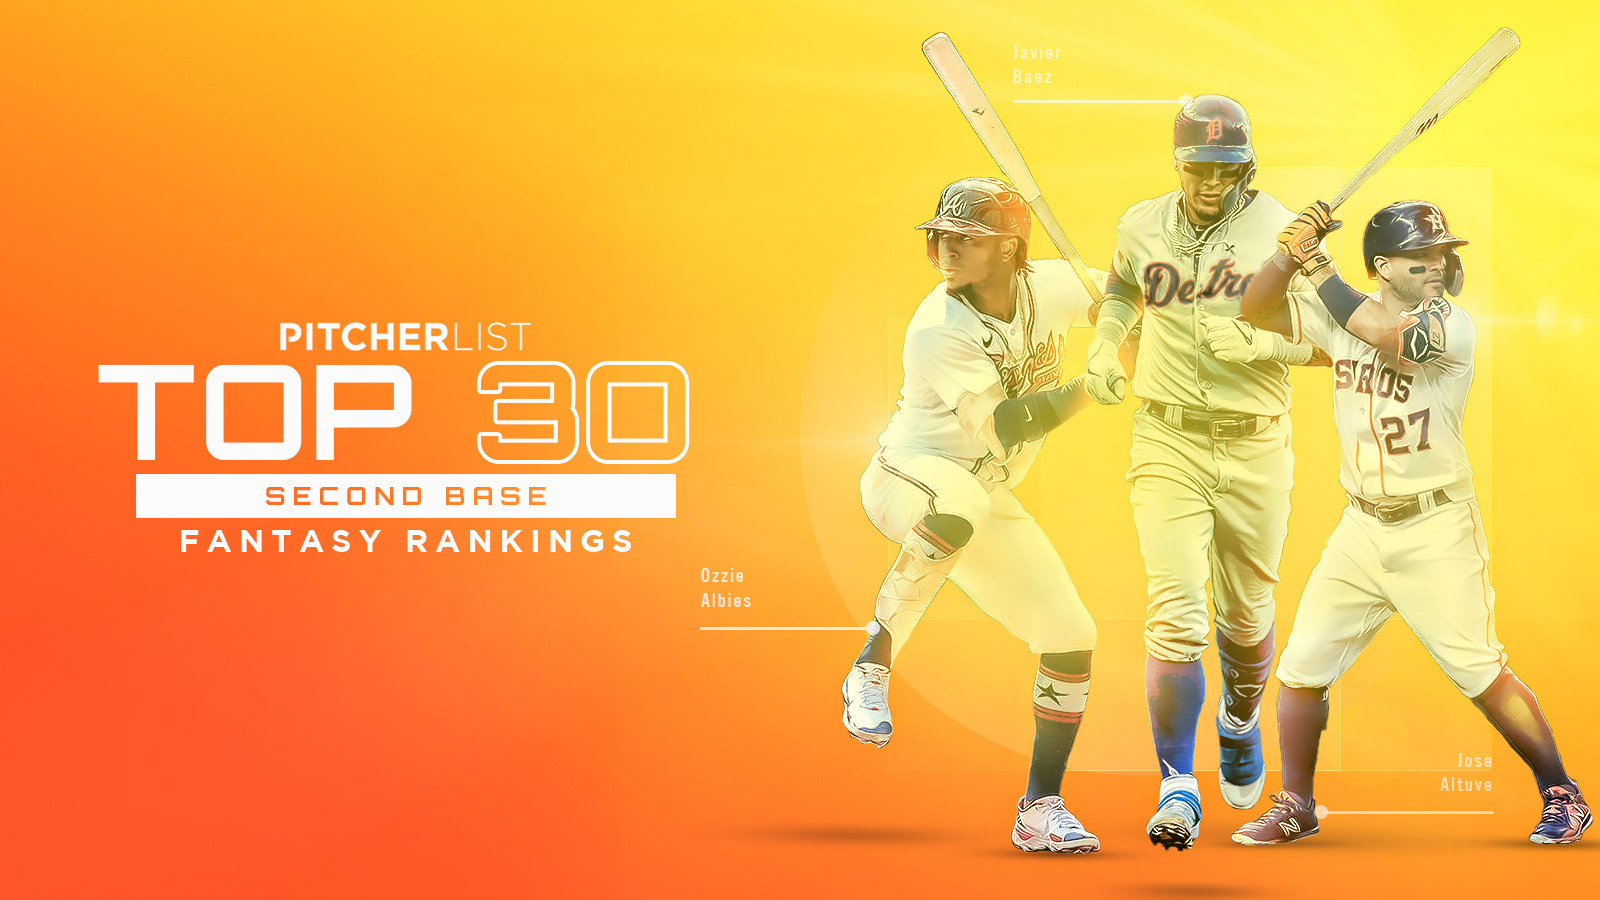 Top 30 Second Basemen For 2022 Fantasy Baseball